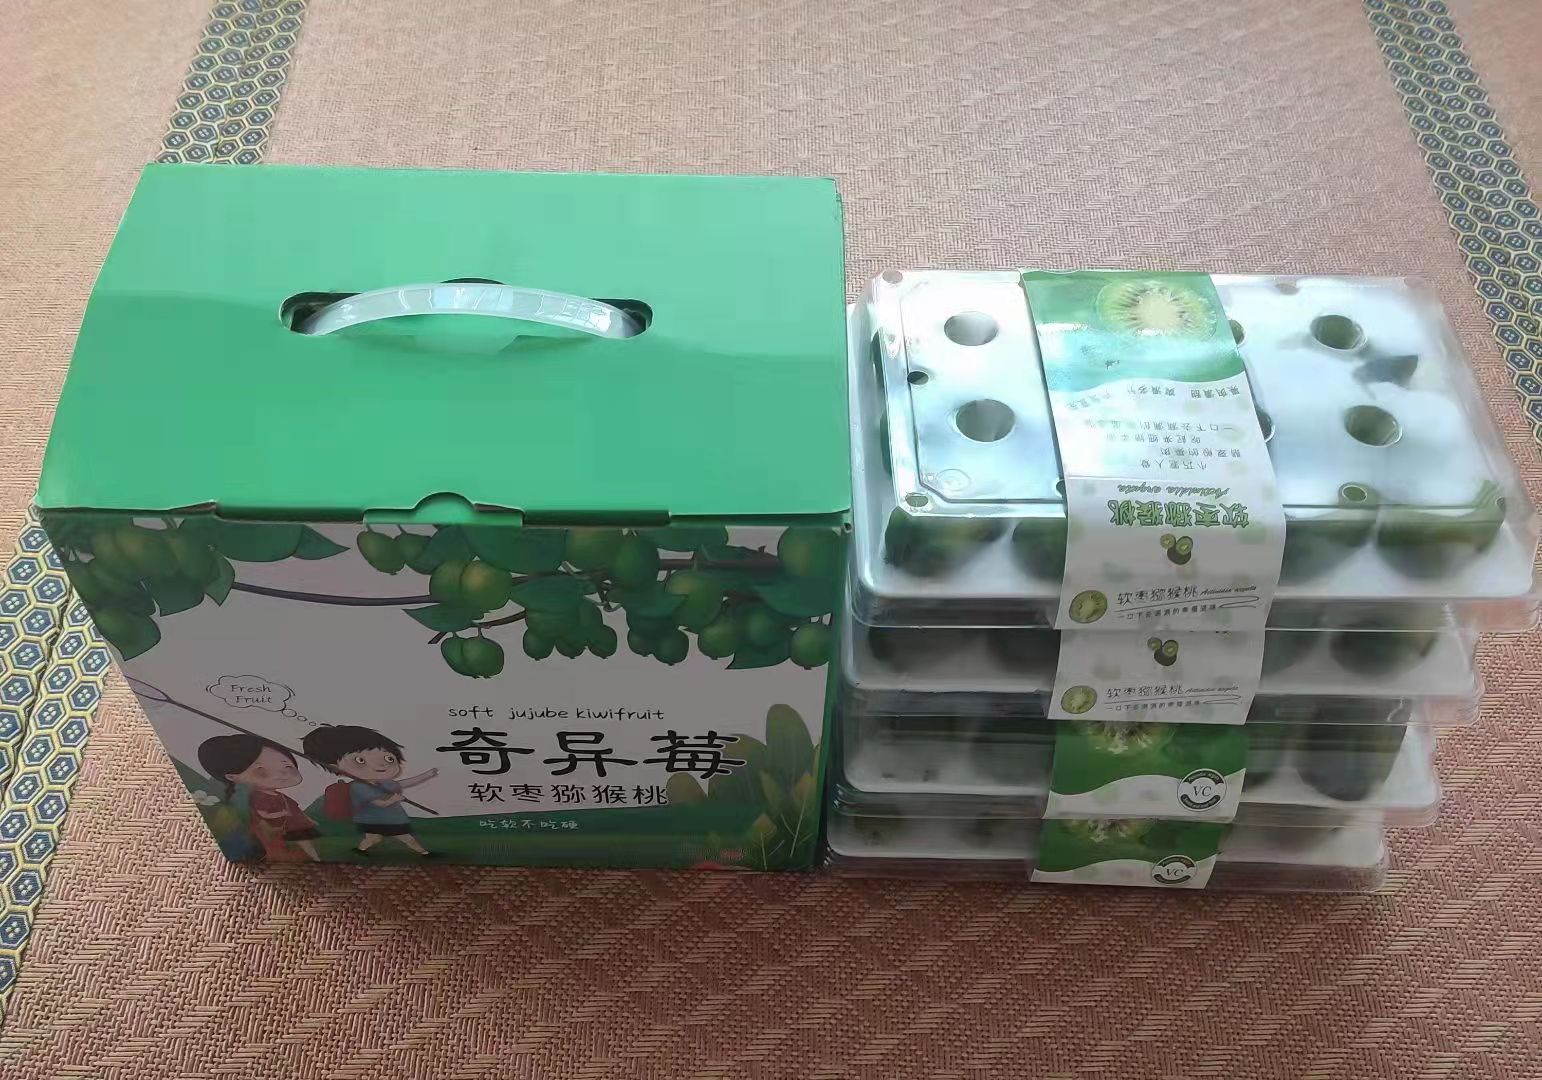 软枣猕猴桃包装箱